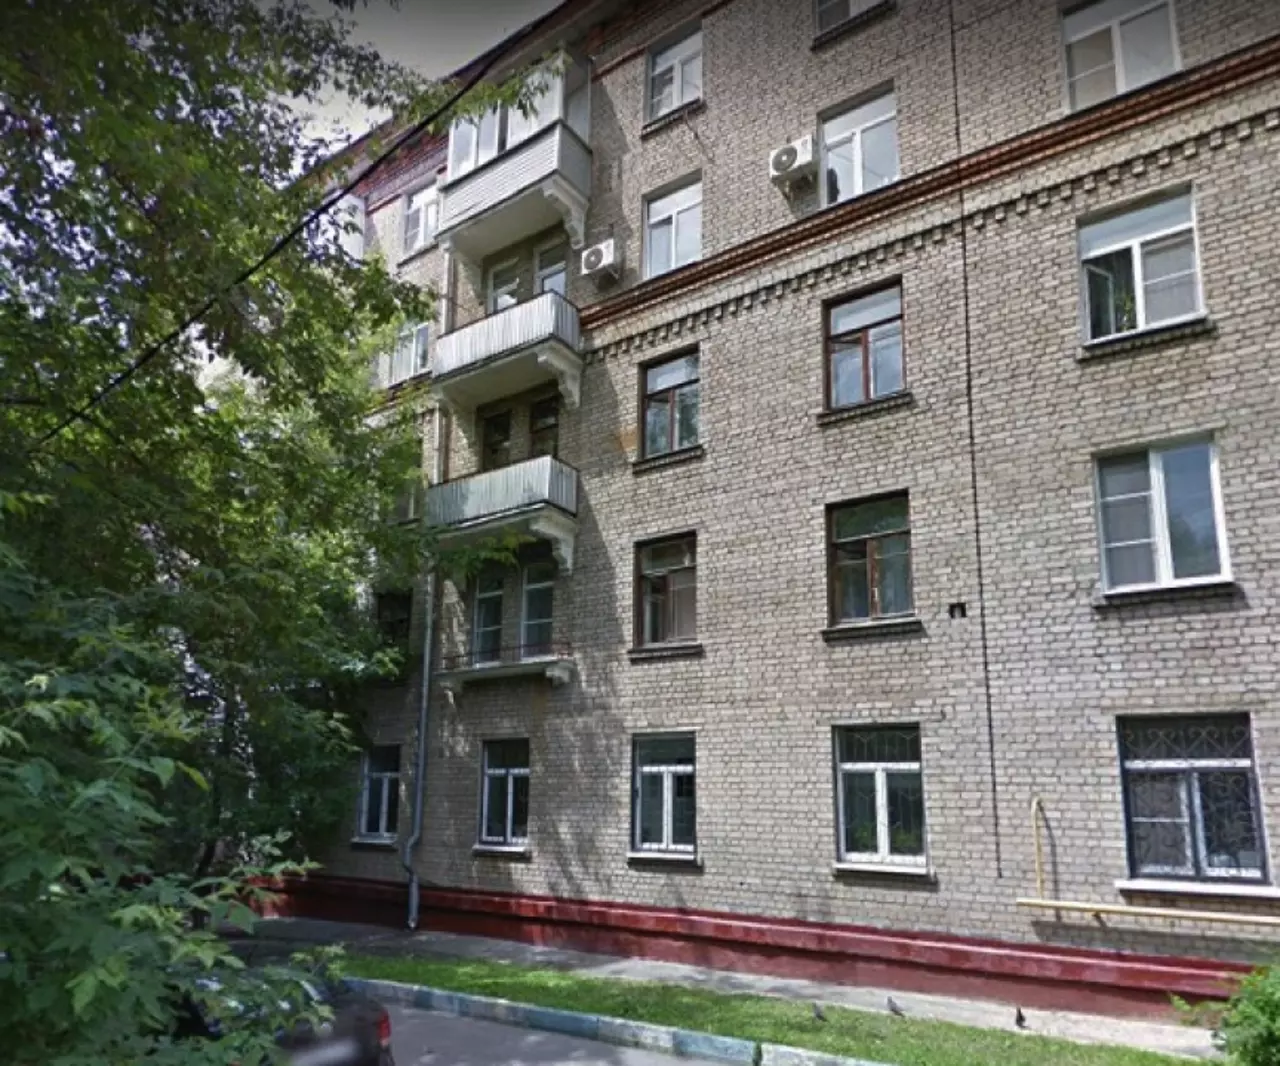 Продам квартиру в Москве по адресу Каширское шоссе, 56к2, площадь 151 квм Недвижимость Москва (Россия)  Дом расположен в сложившемся и благоустроенном районе столицы